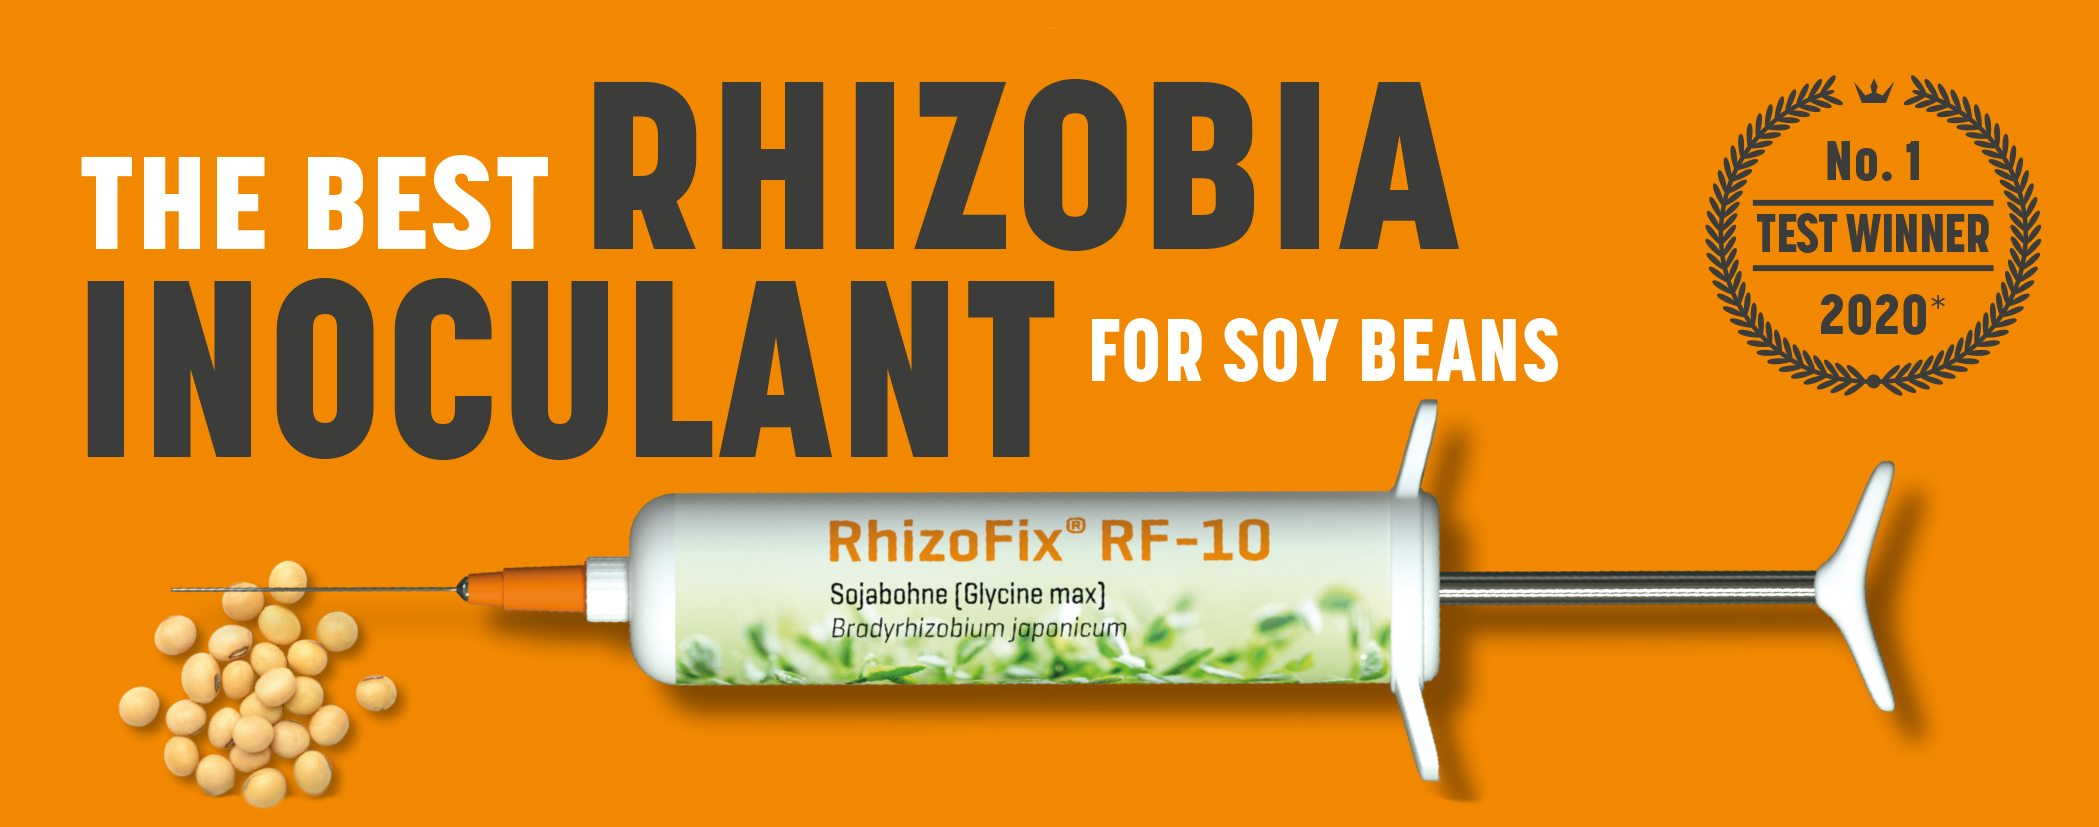 RhizoFix_RF-10_test_winner_2020.png